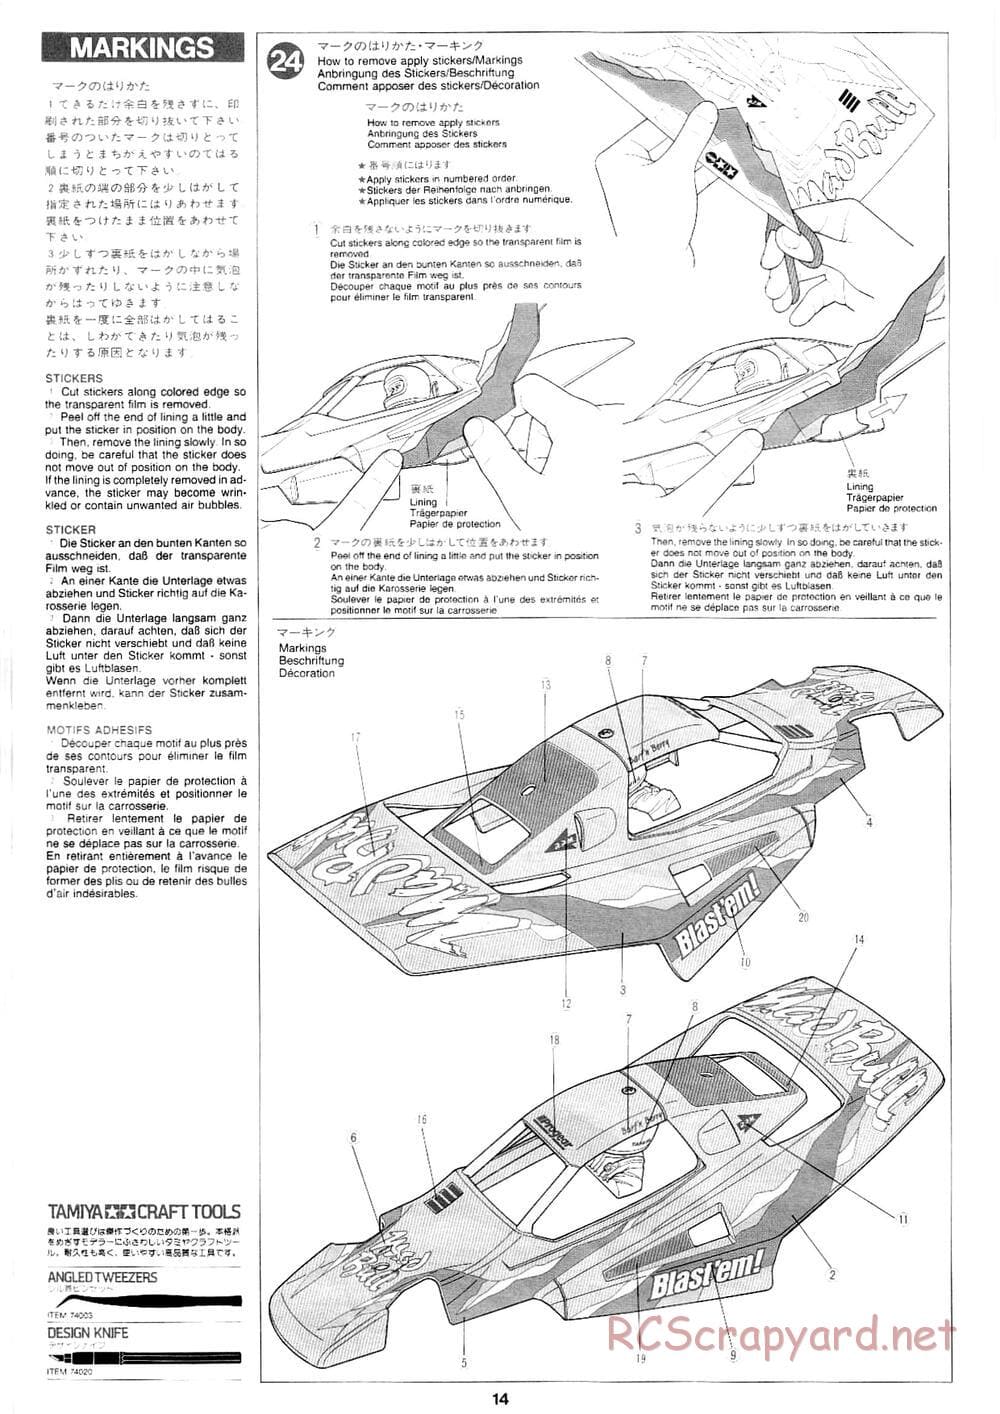 Tamiya - Mad Bull Chassis - Manual - Page 14